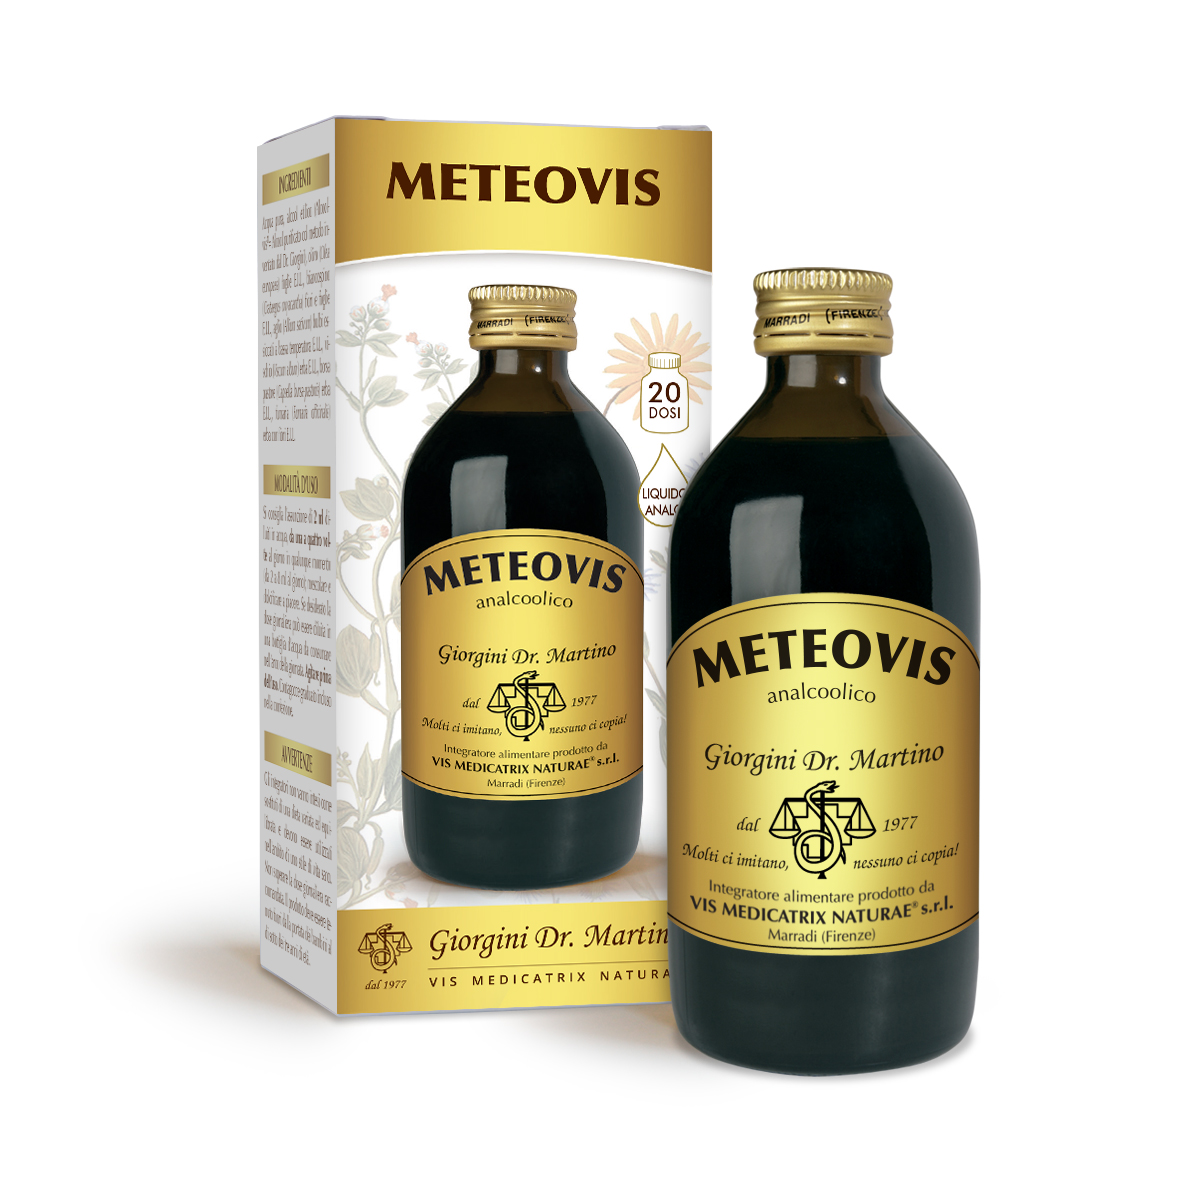 METEOVIS